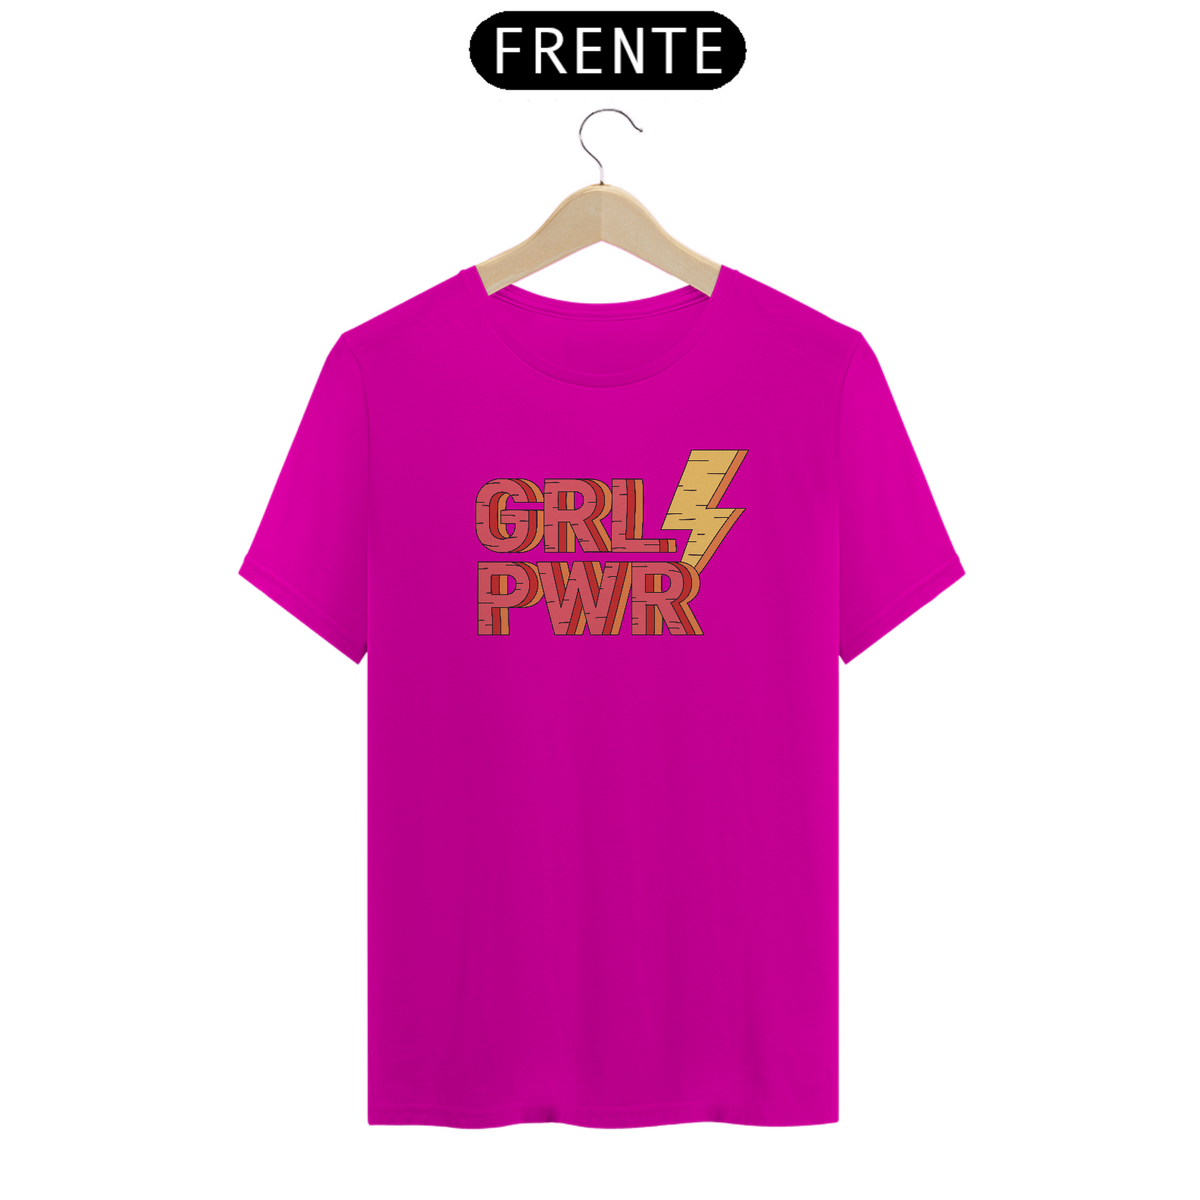 Nome do produto: Girl Power